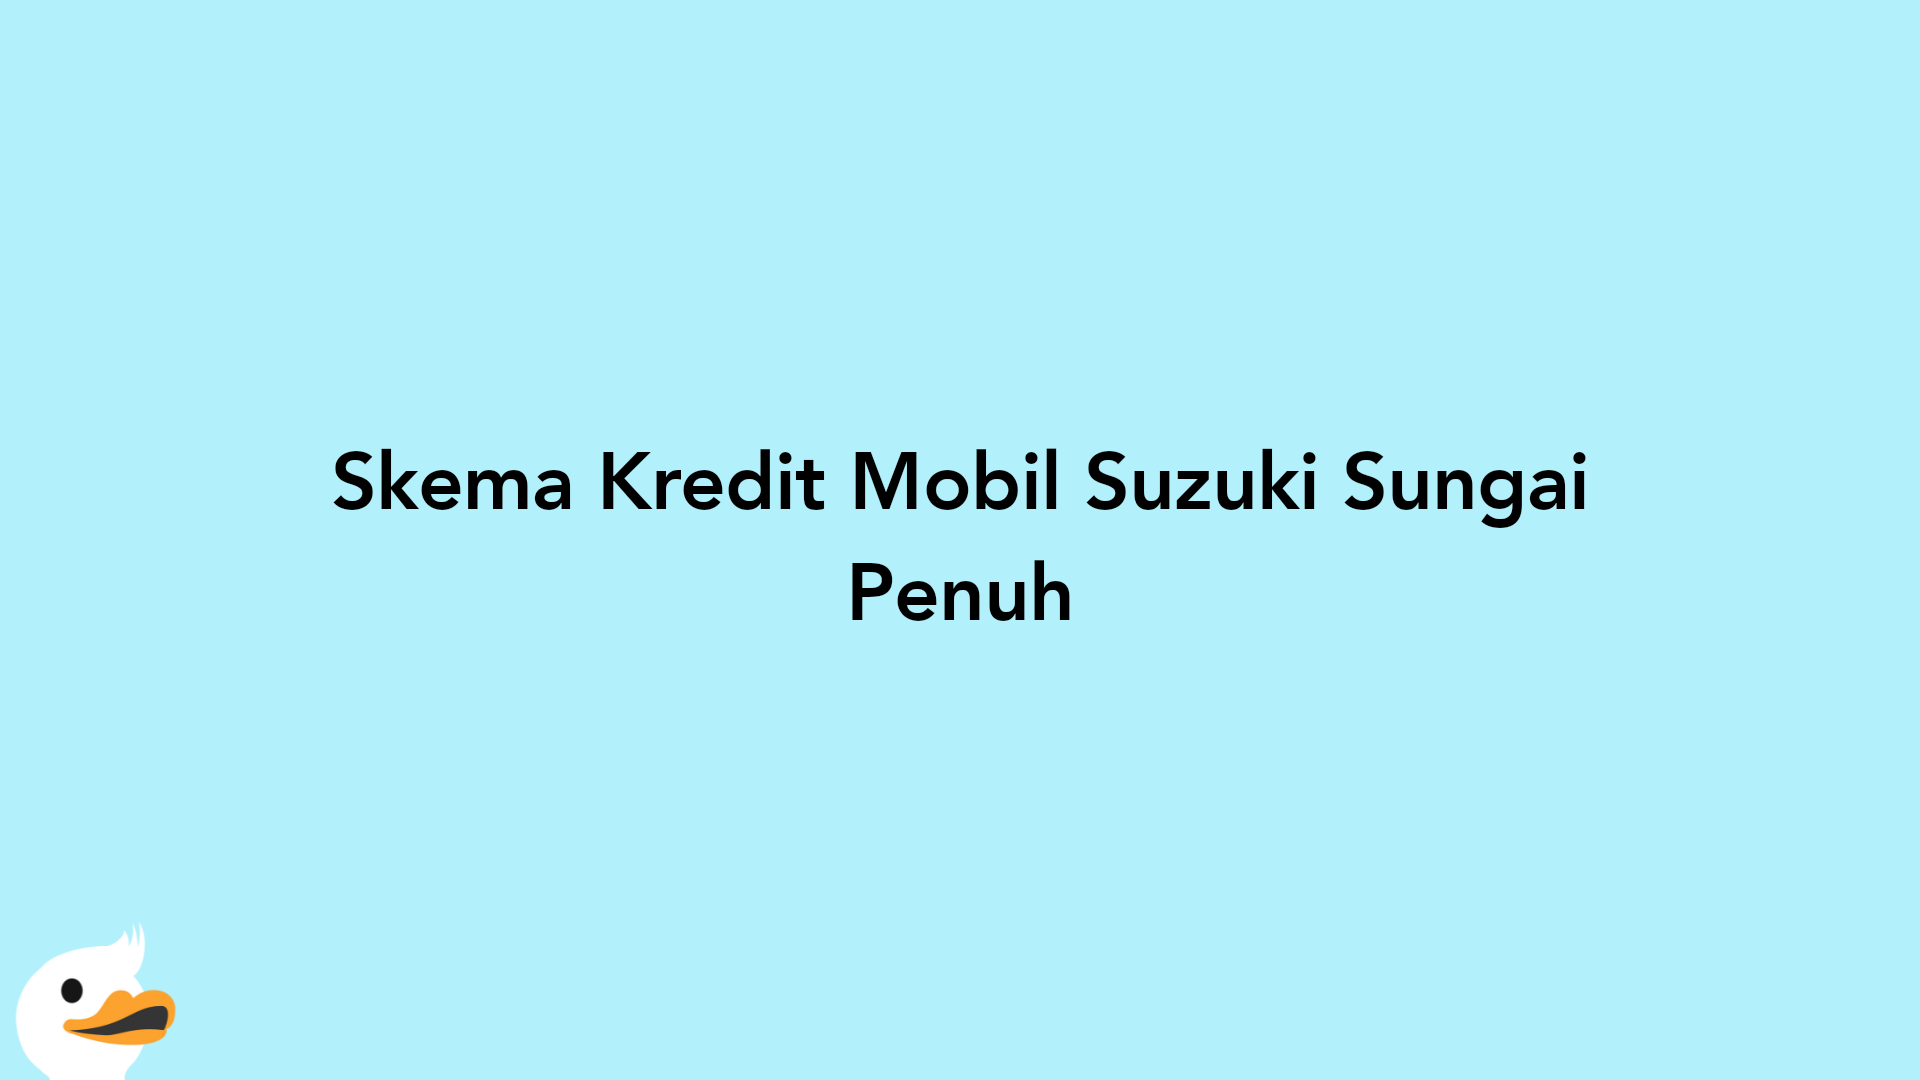 Skema Kredit Mobil Suzuki Sungai Penuh